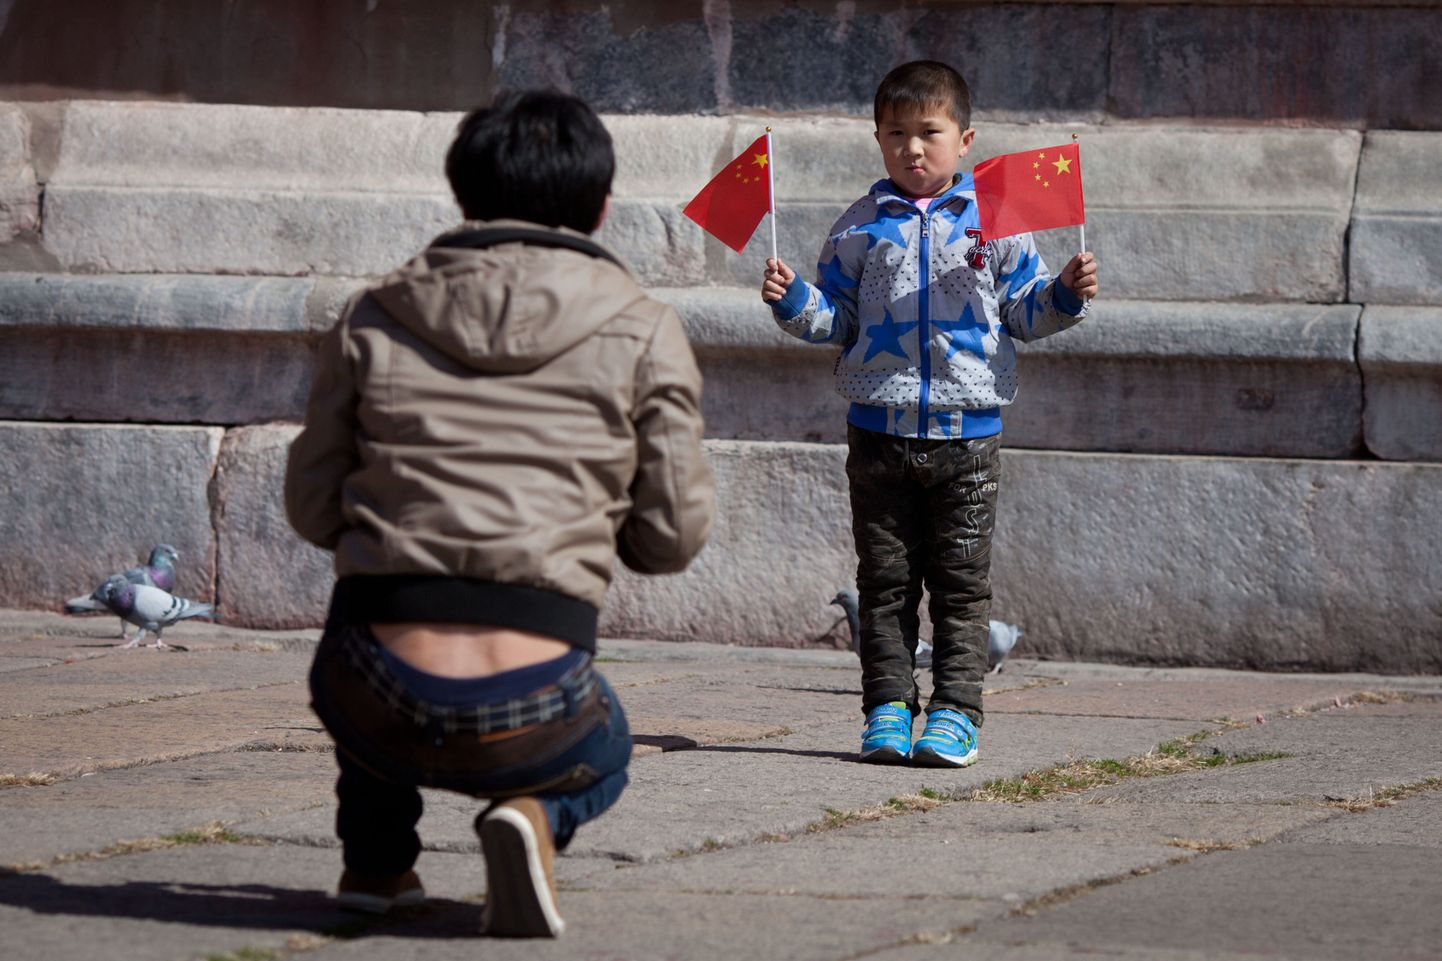 Hiina poiss hoiab Pekingis käes kahte riigilippu, poseerides nii oma isale.